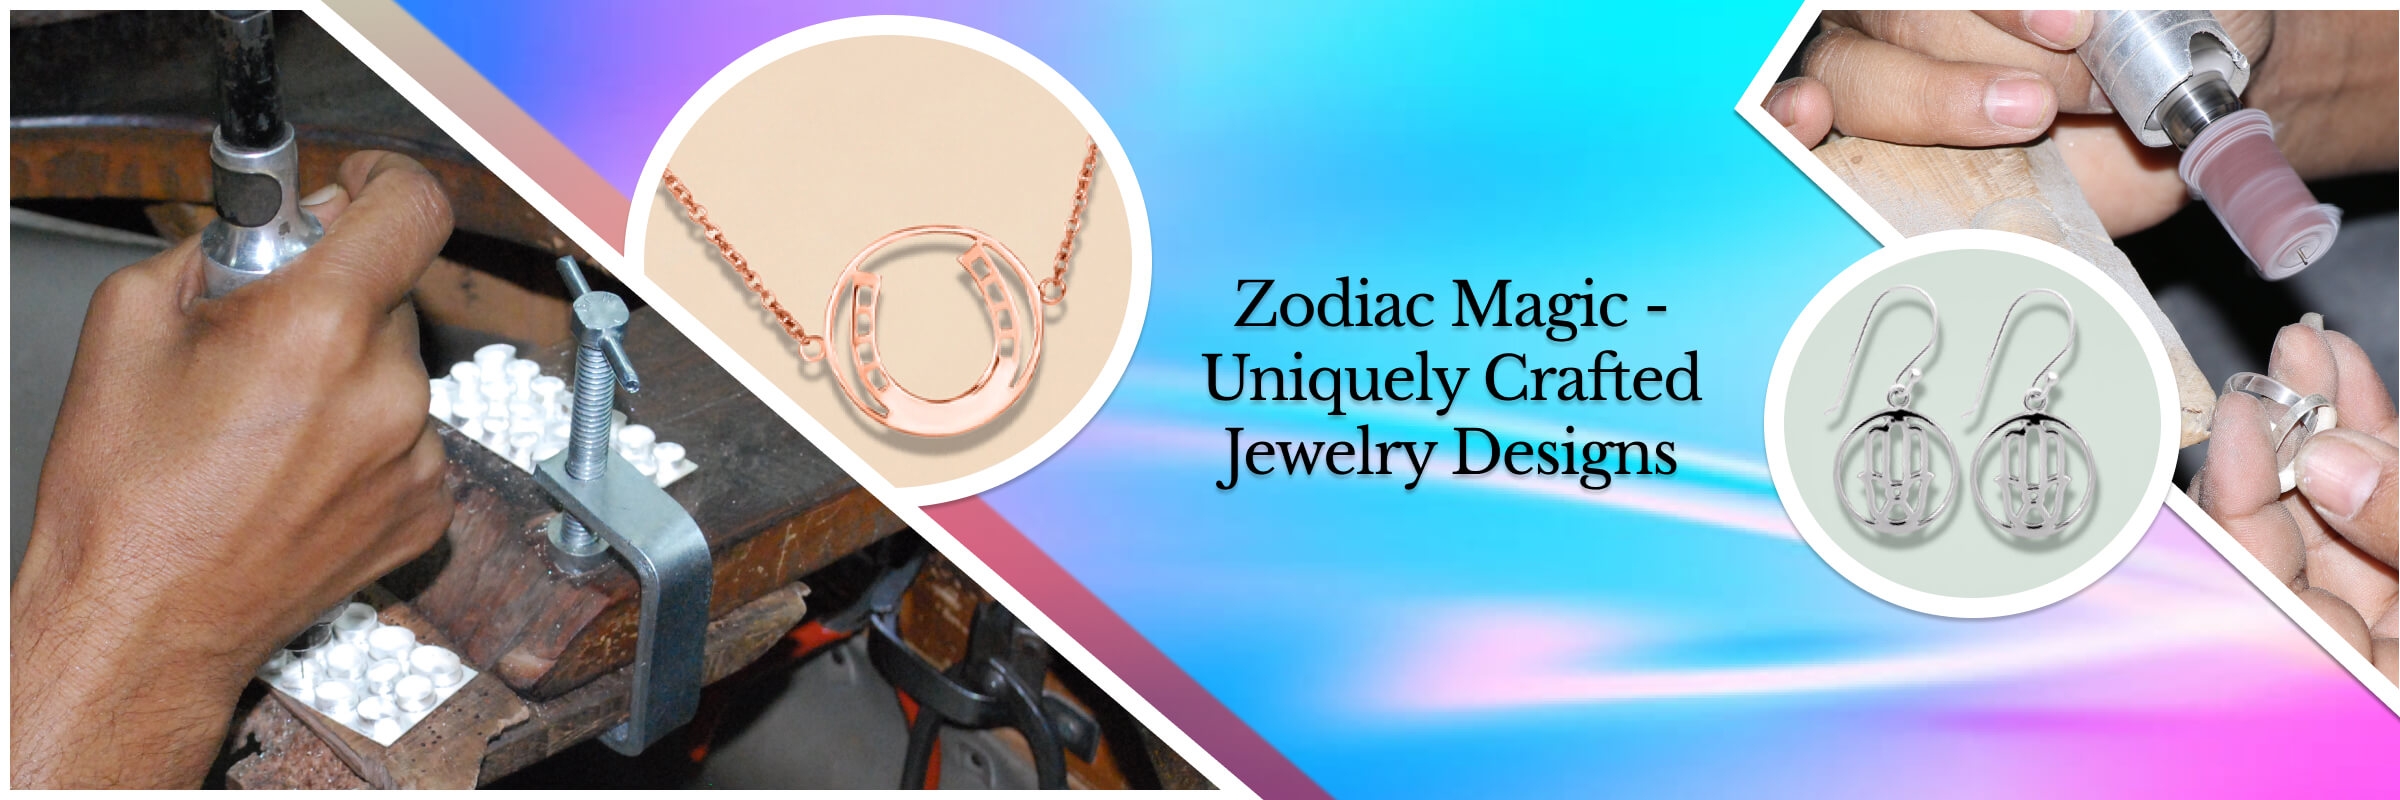 Customized Zodiac Sign Jewelry